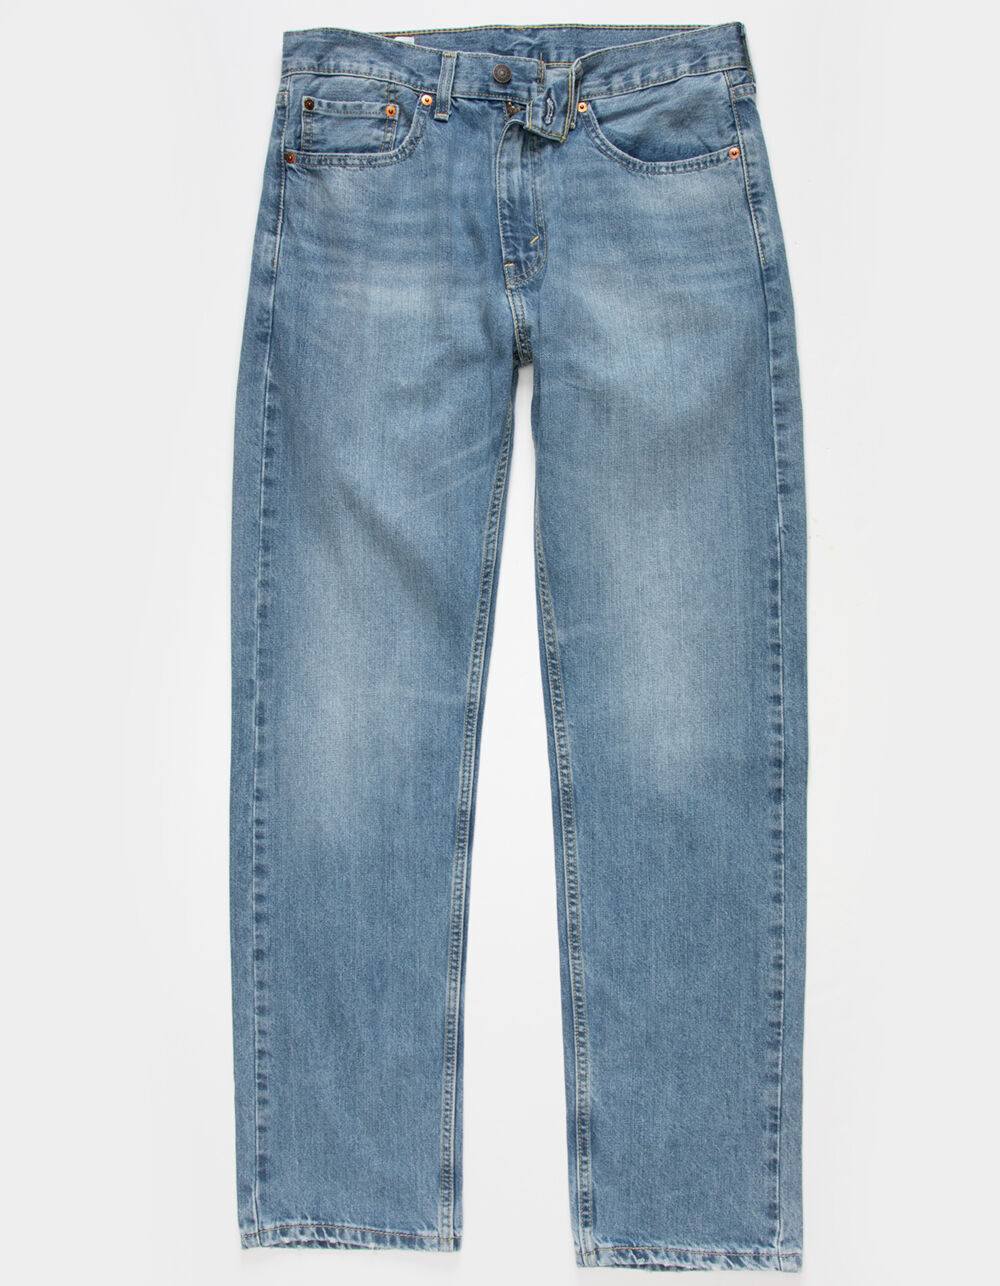 LEVI'S 505 Mens Regular Fit Jeans - LIGHT WASH | Tillys